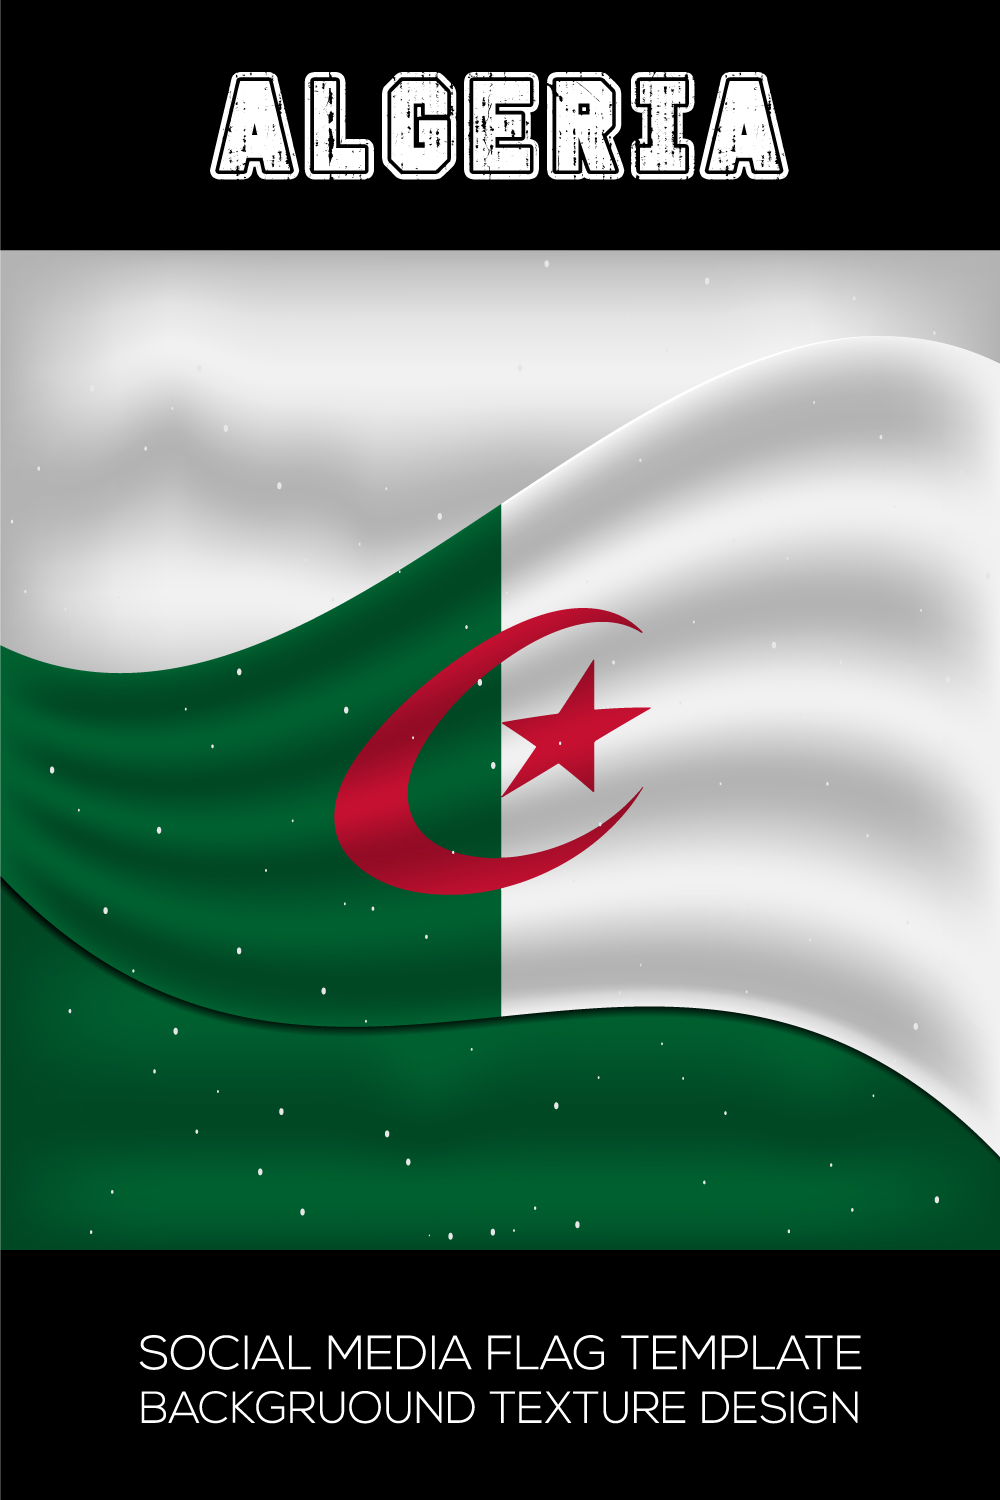 Elegant image of the flag of Algeria.